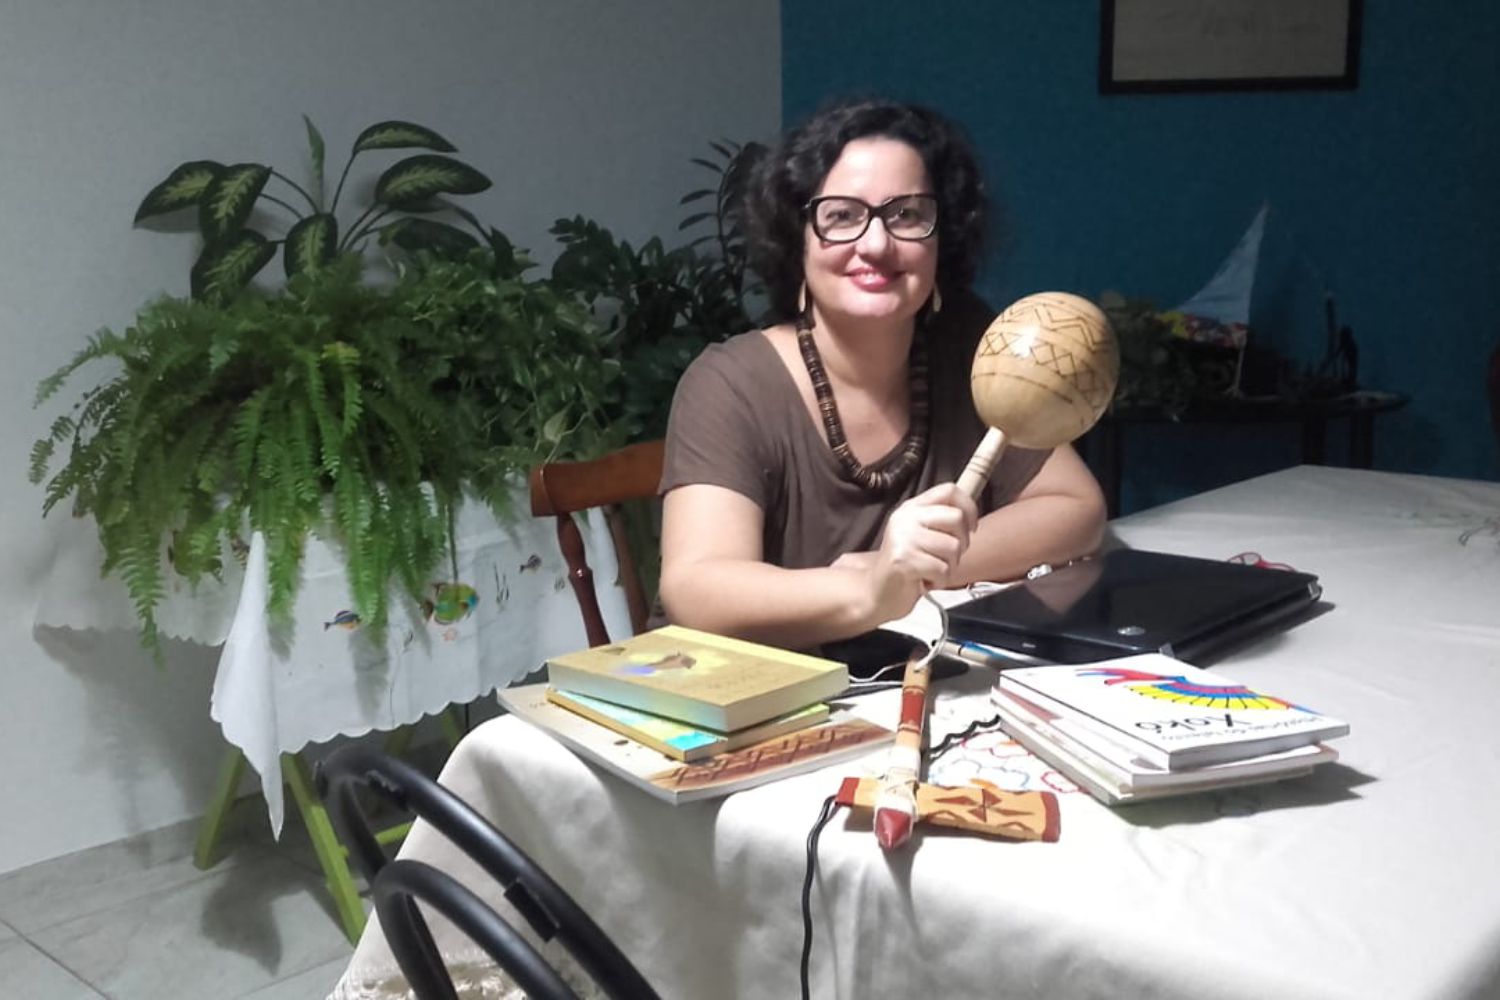 Angelita Queiroz: “A Comunidade Indígena Xokó é linda, com um povo extremamente organizado e acolhedor. Só tenho que agradecer por tudo que vivenciei durante o período do mestrado realizado no PPGCULT”. (Foto: acervo pessoal)